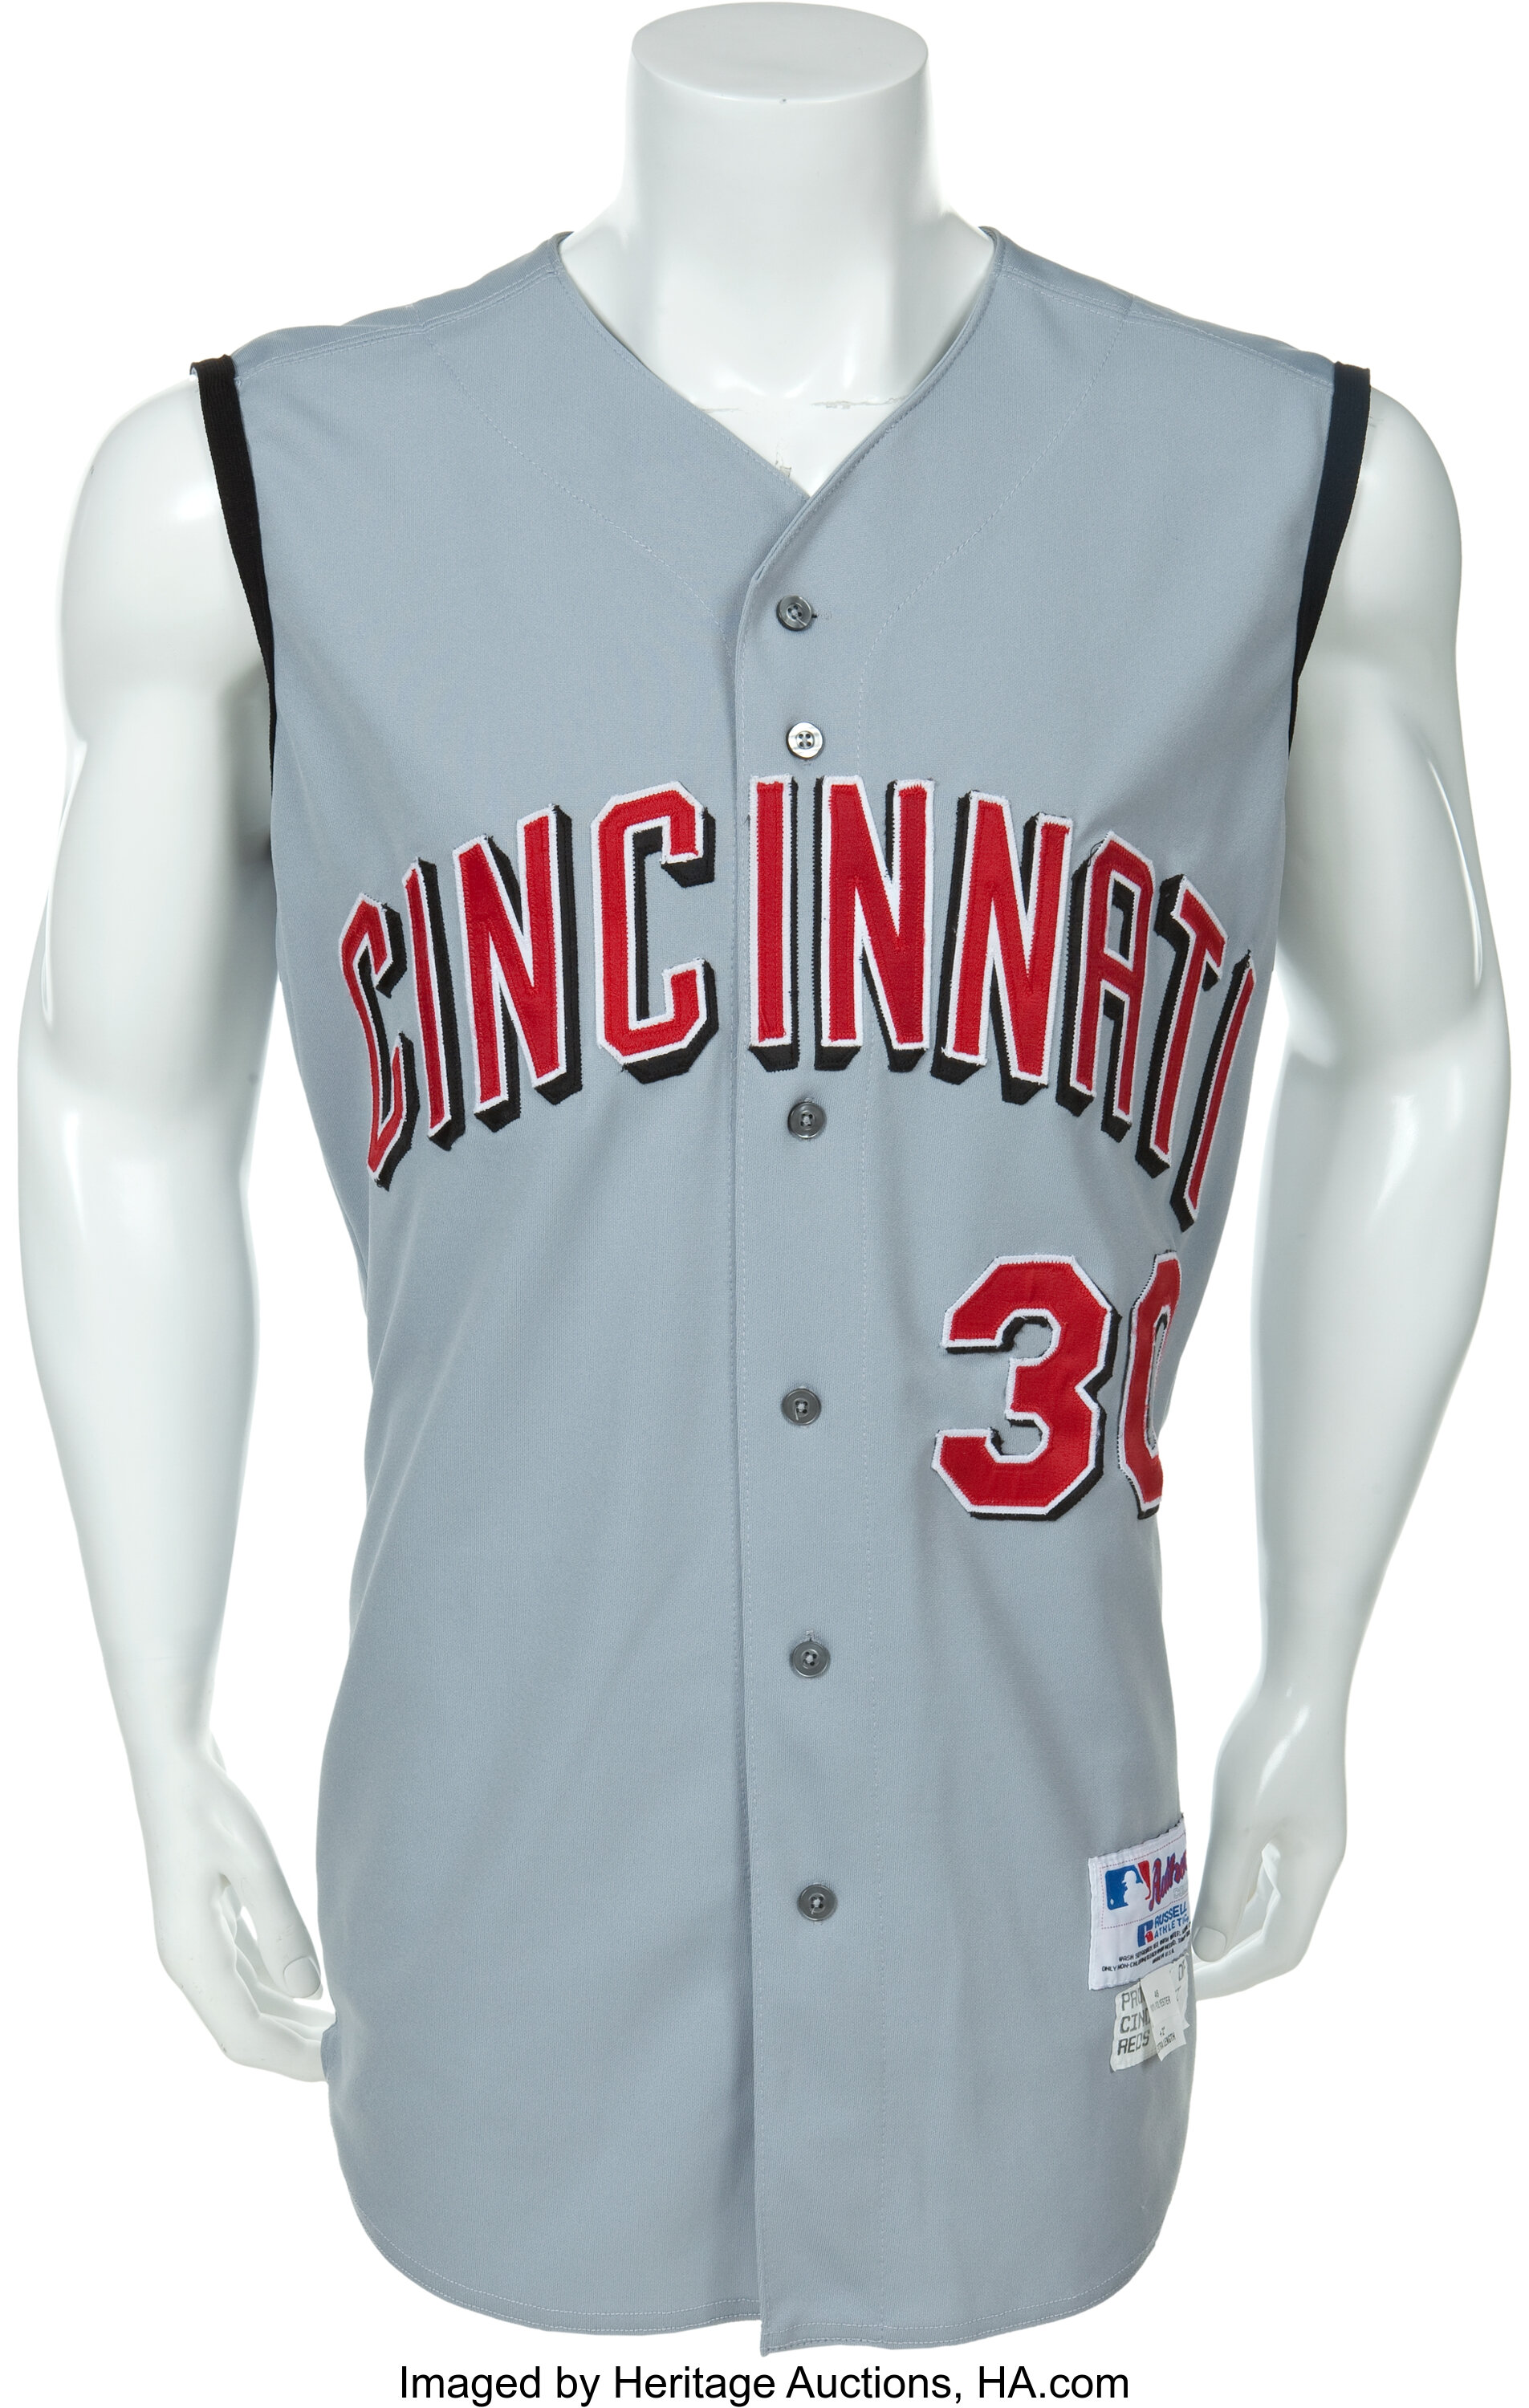 MLB Cincinnati Reds City Connect (Ken Griffey Jr.) Men's Replica Baseball  Jersey.